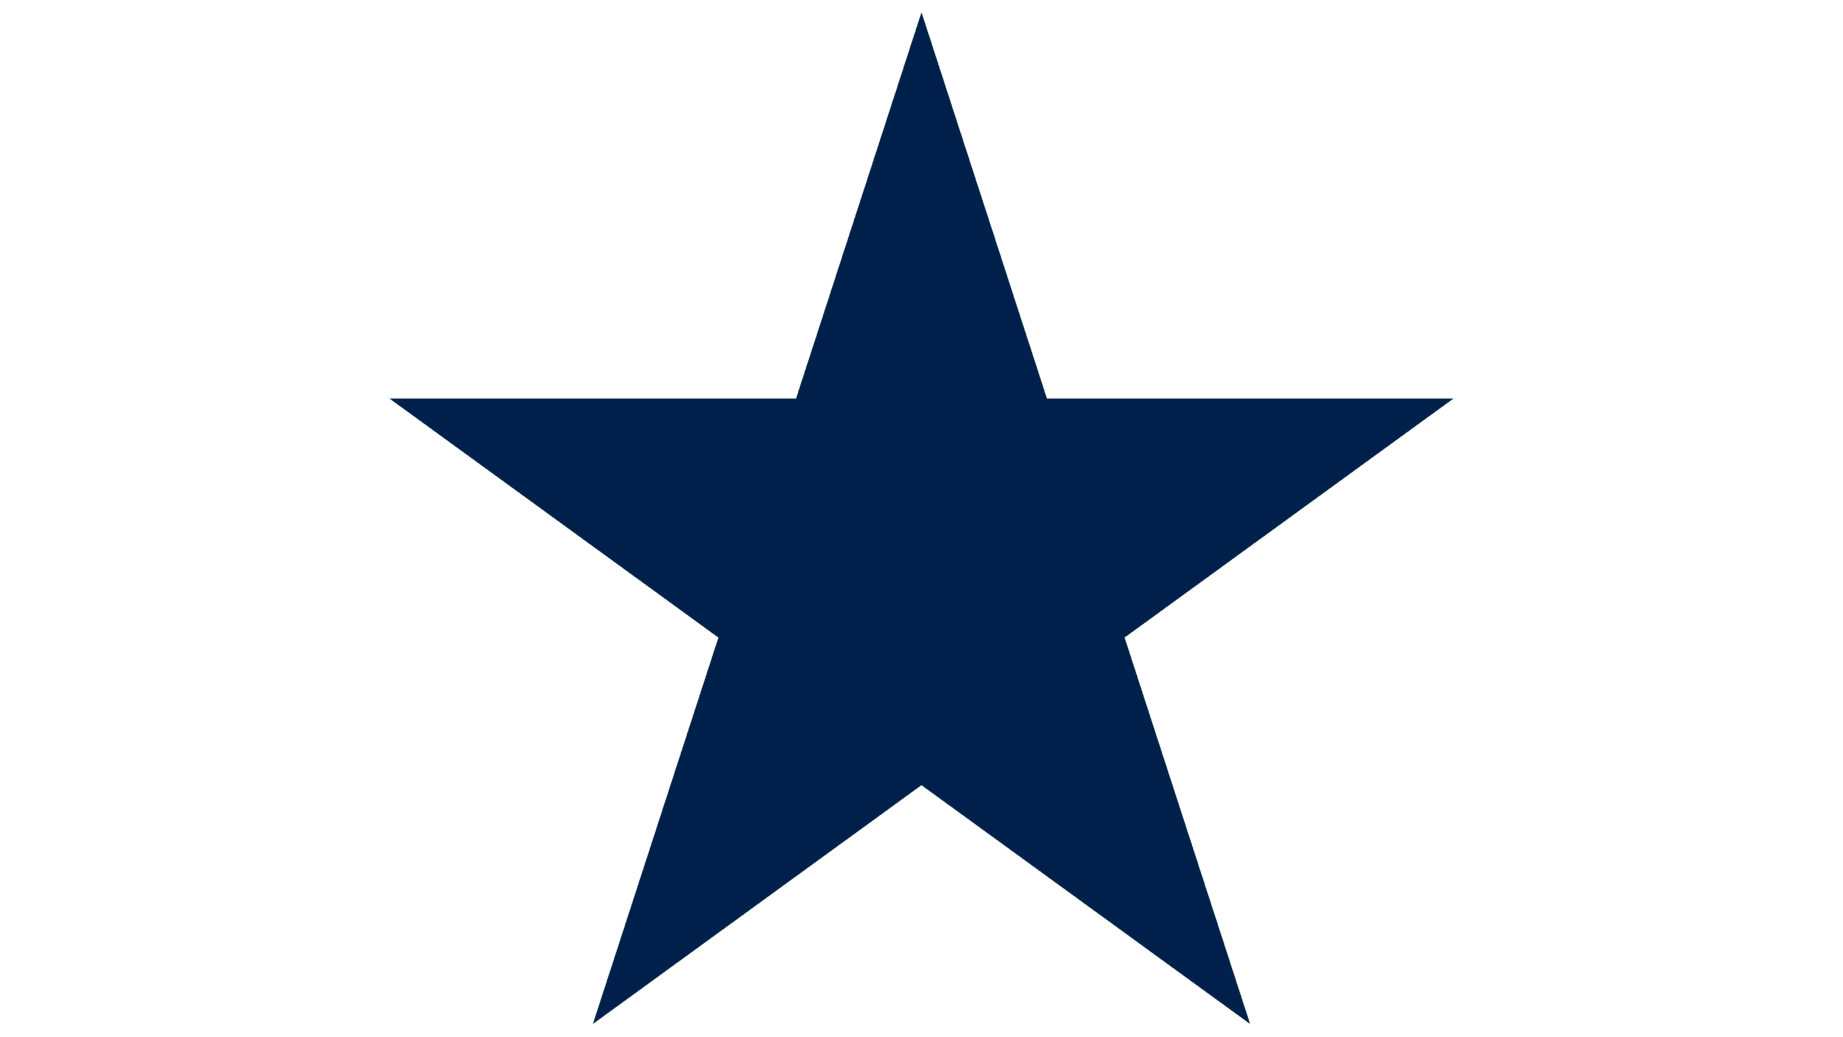 Dallas cowboys logo